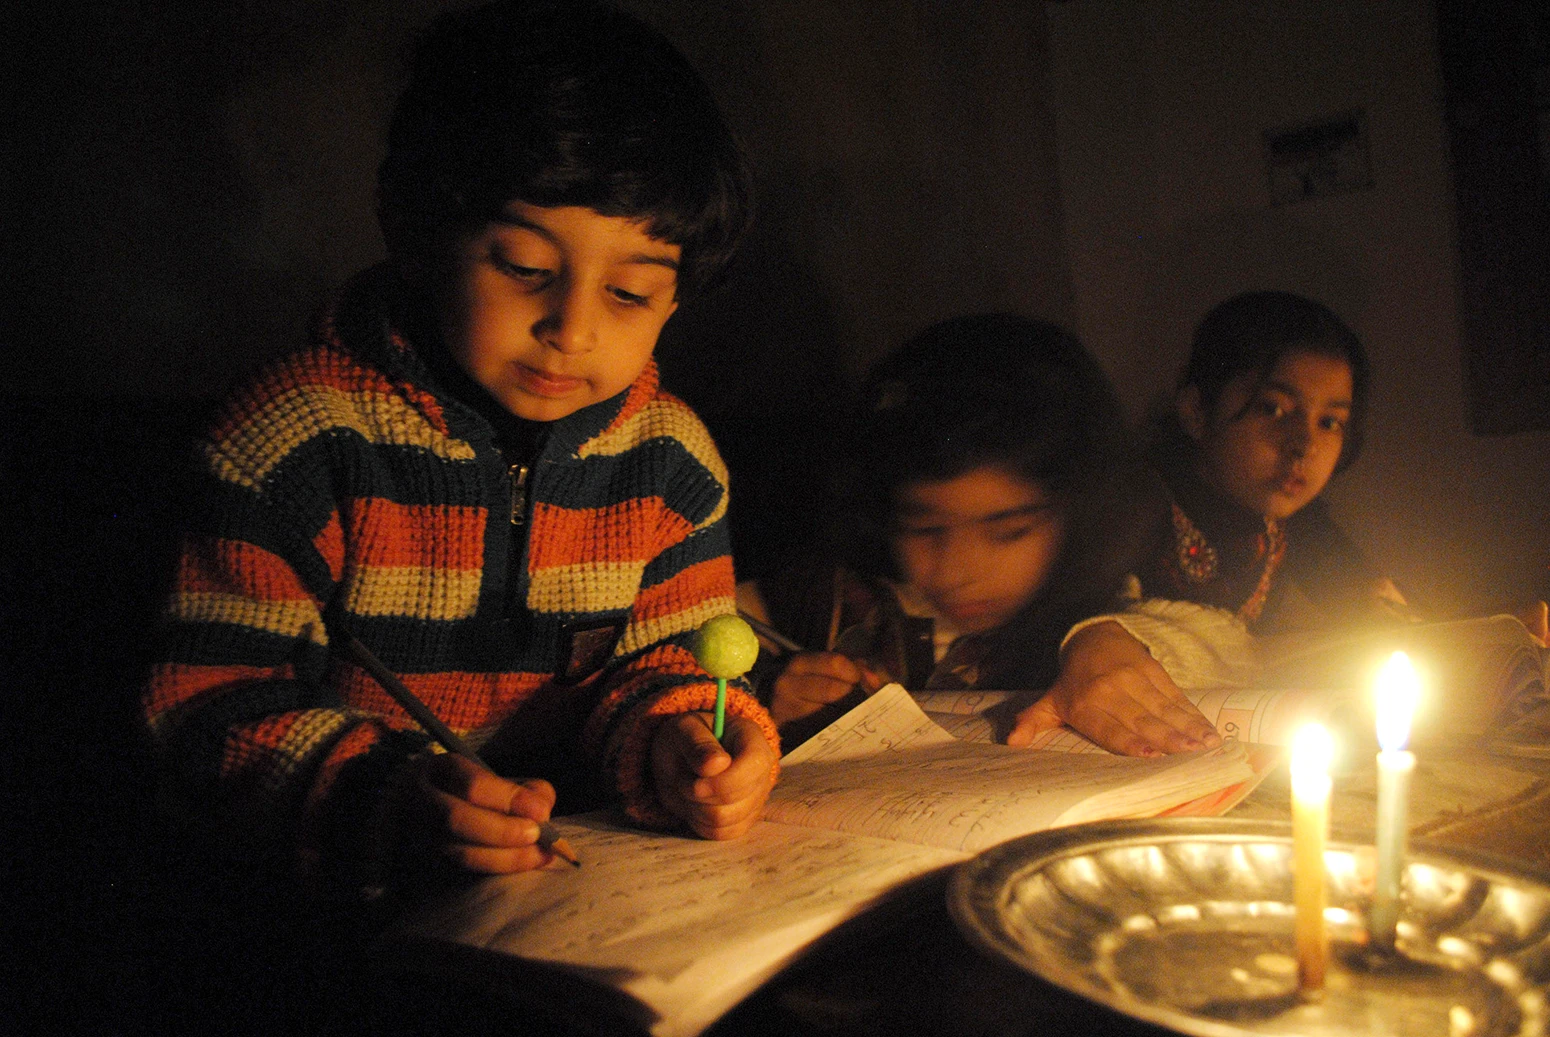 เด็กๆ เรียนหนังสือใต้แสงเทียนระหว่างไฟฟ้าดับในเมืองเปชาวาร์ทางตะวันตกเฉียงเหนือของปากีสถาน มกราคม 2015